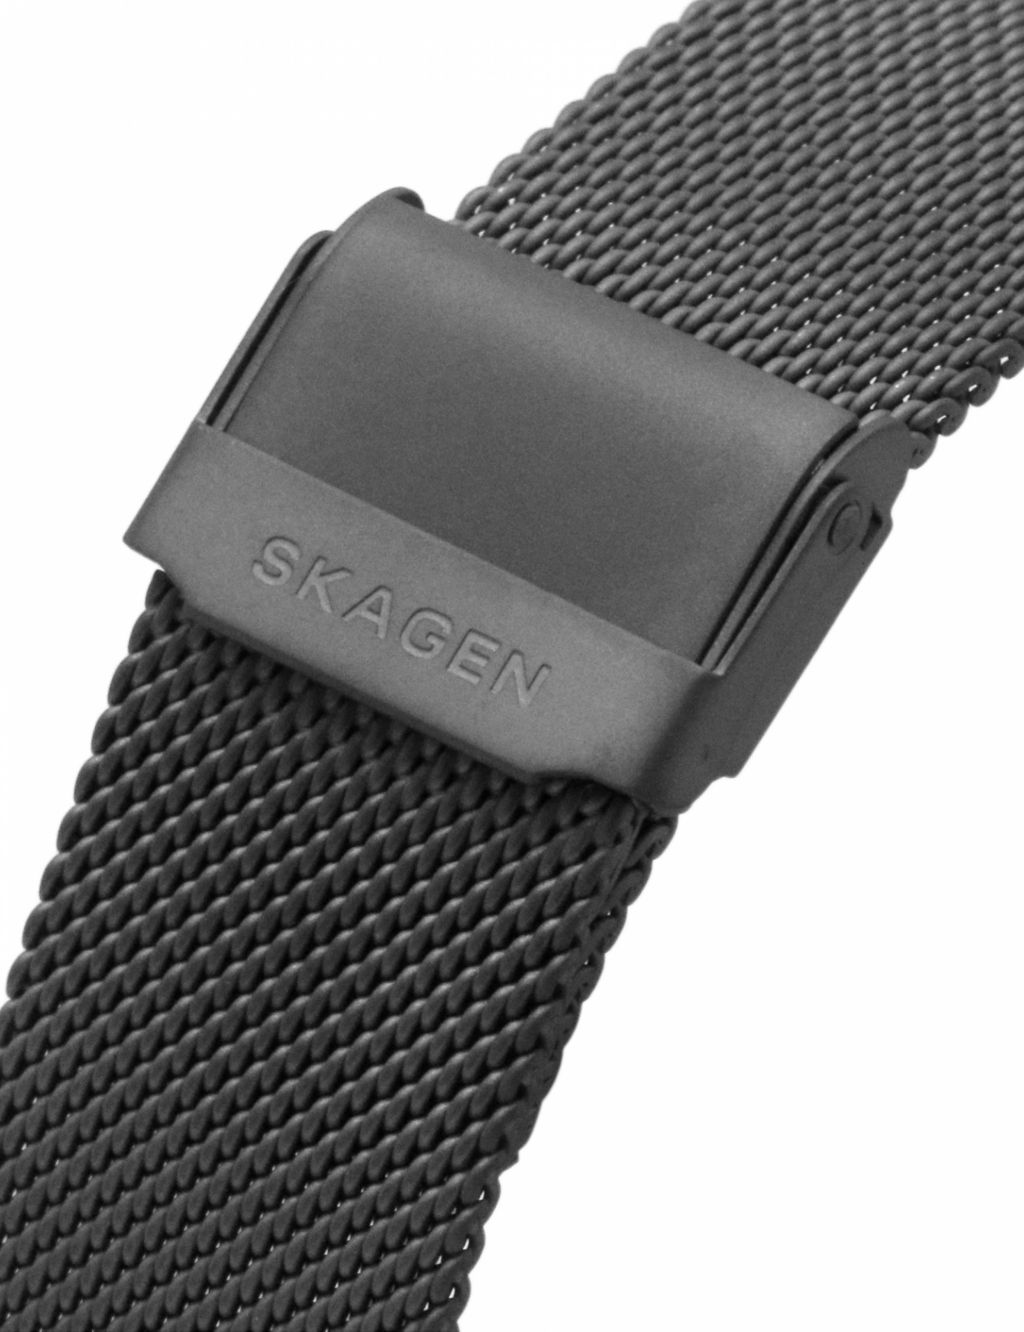 Skagen Anchor Grey Stainless Steel Bracelet Quartz Watch image 6